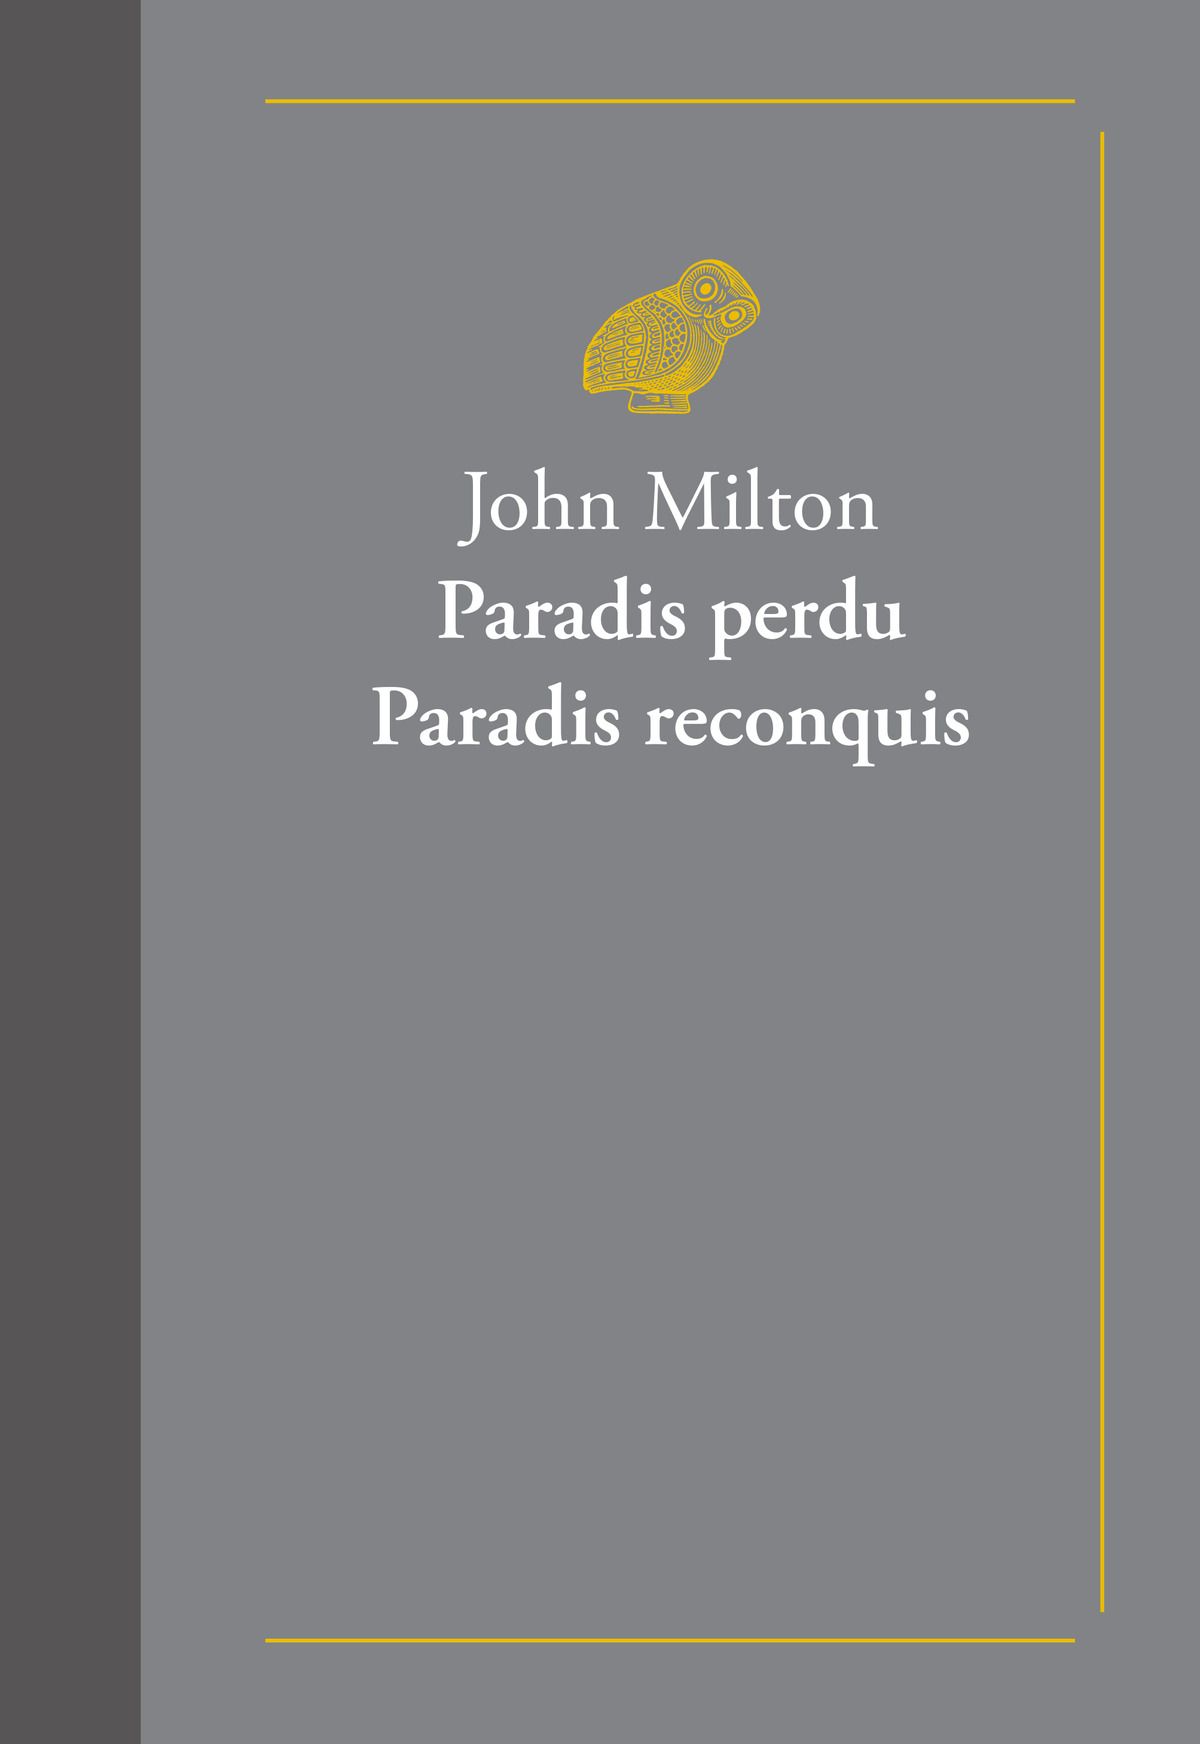 J. Milton, Paradis perdu. Paradis reconquis (éd. P. Messiaen, J. Blondel)